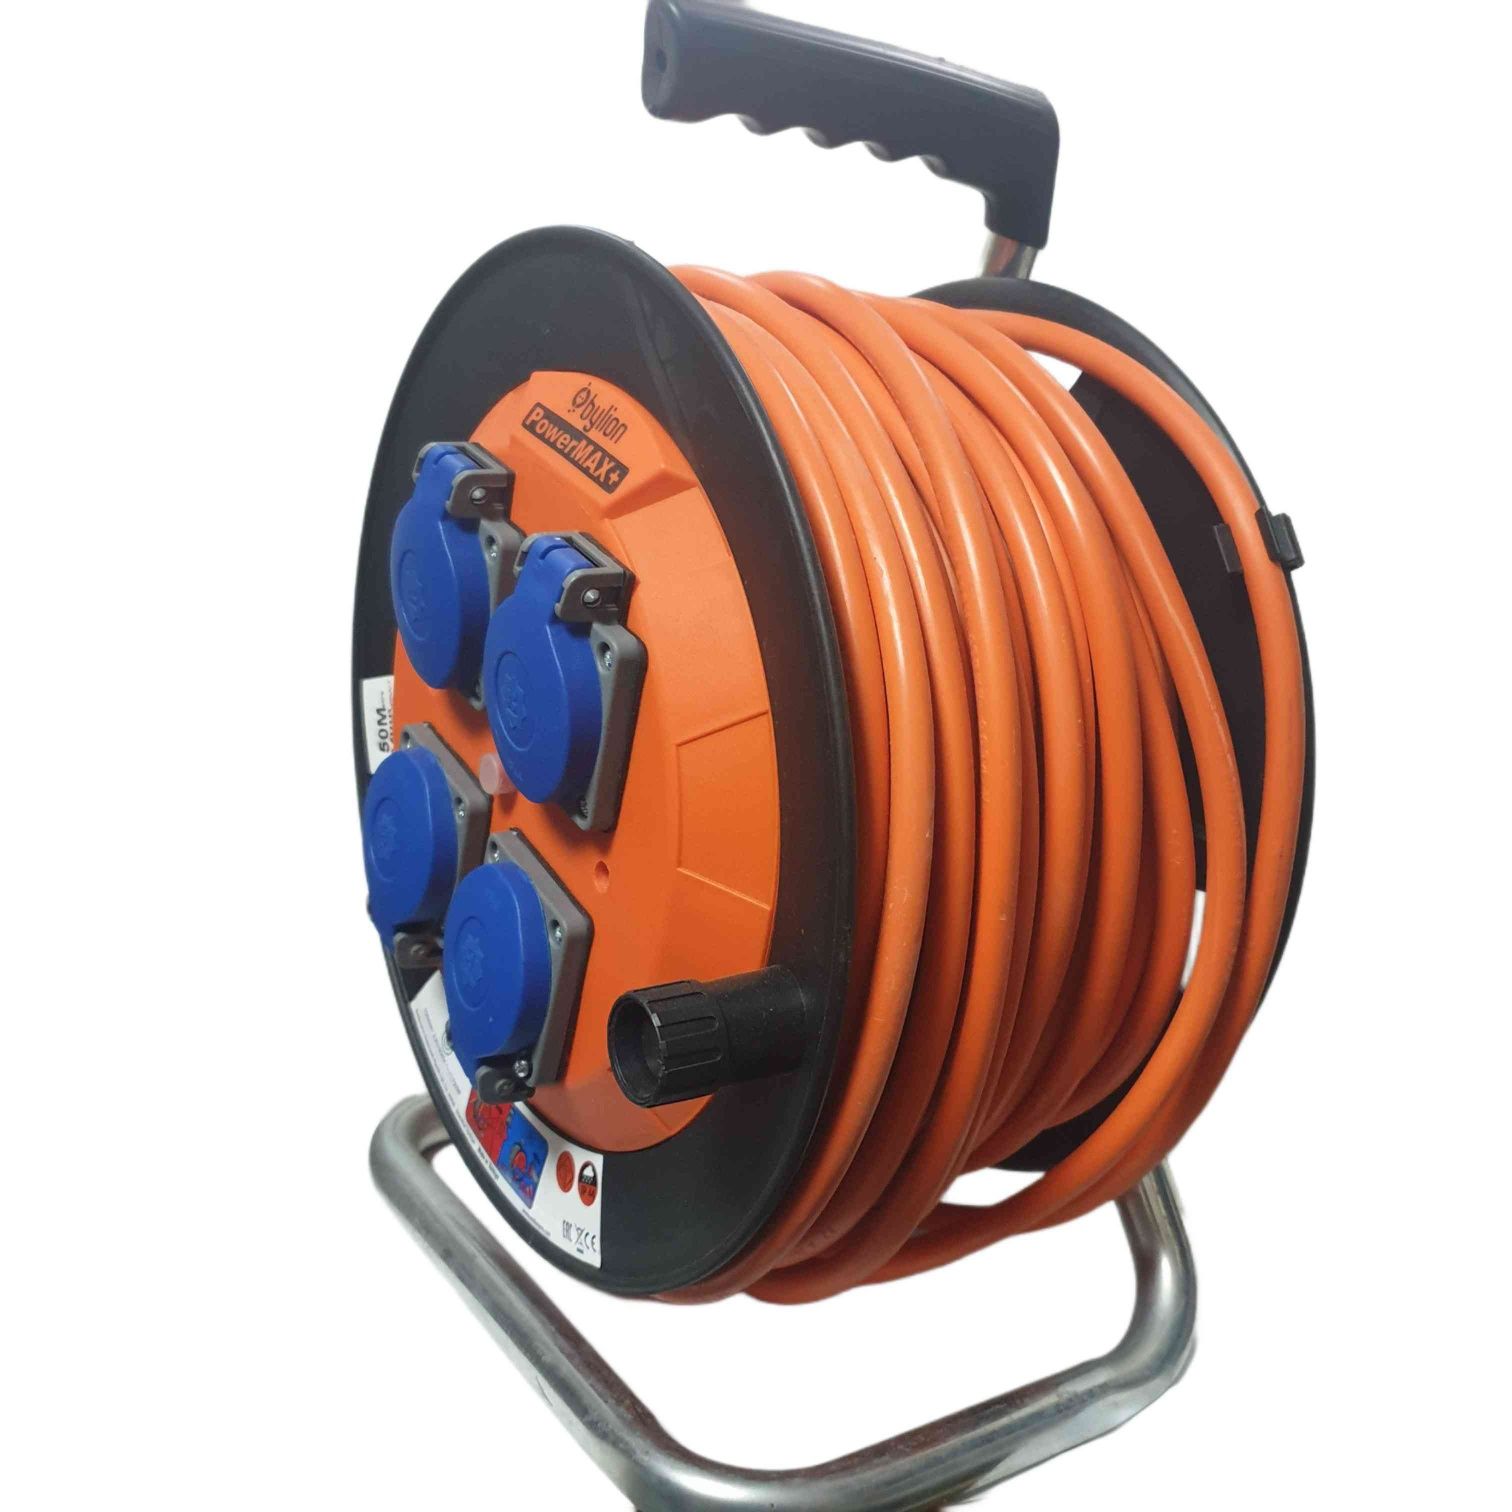 Rola derulare cablu electric 3x2,5mm 50m PROFI